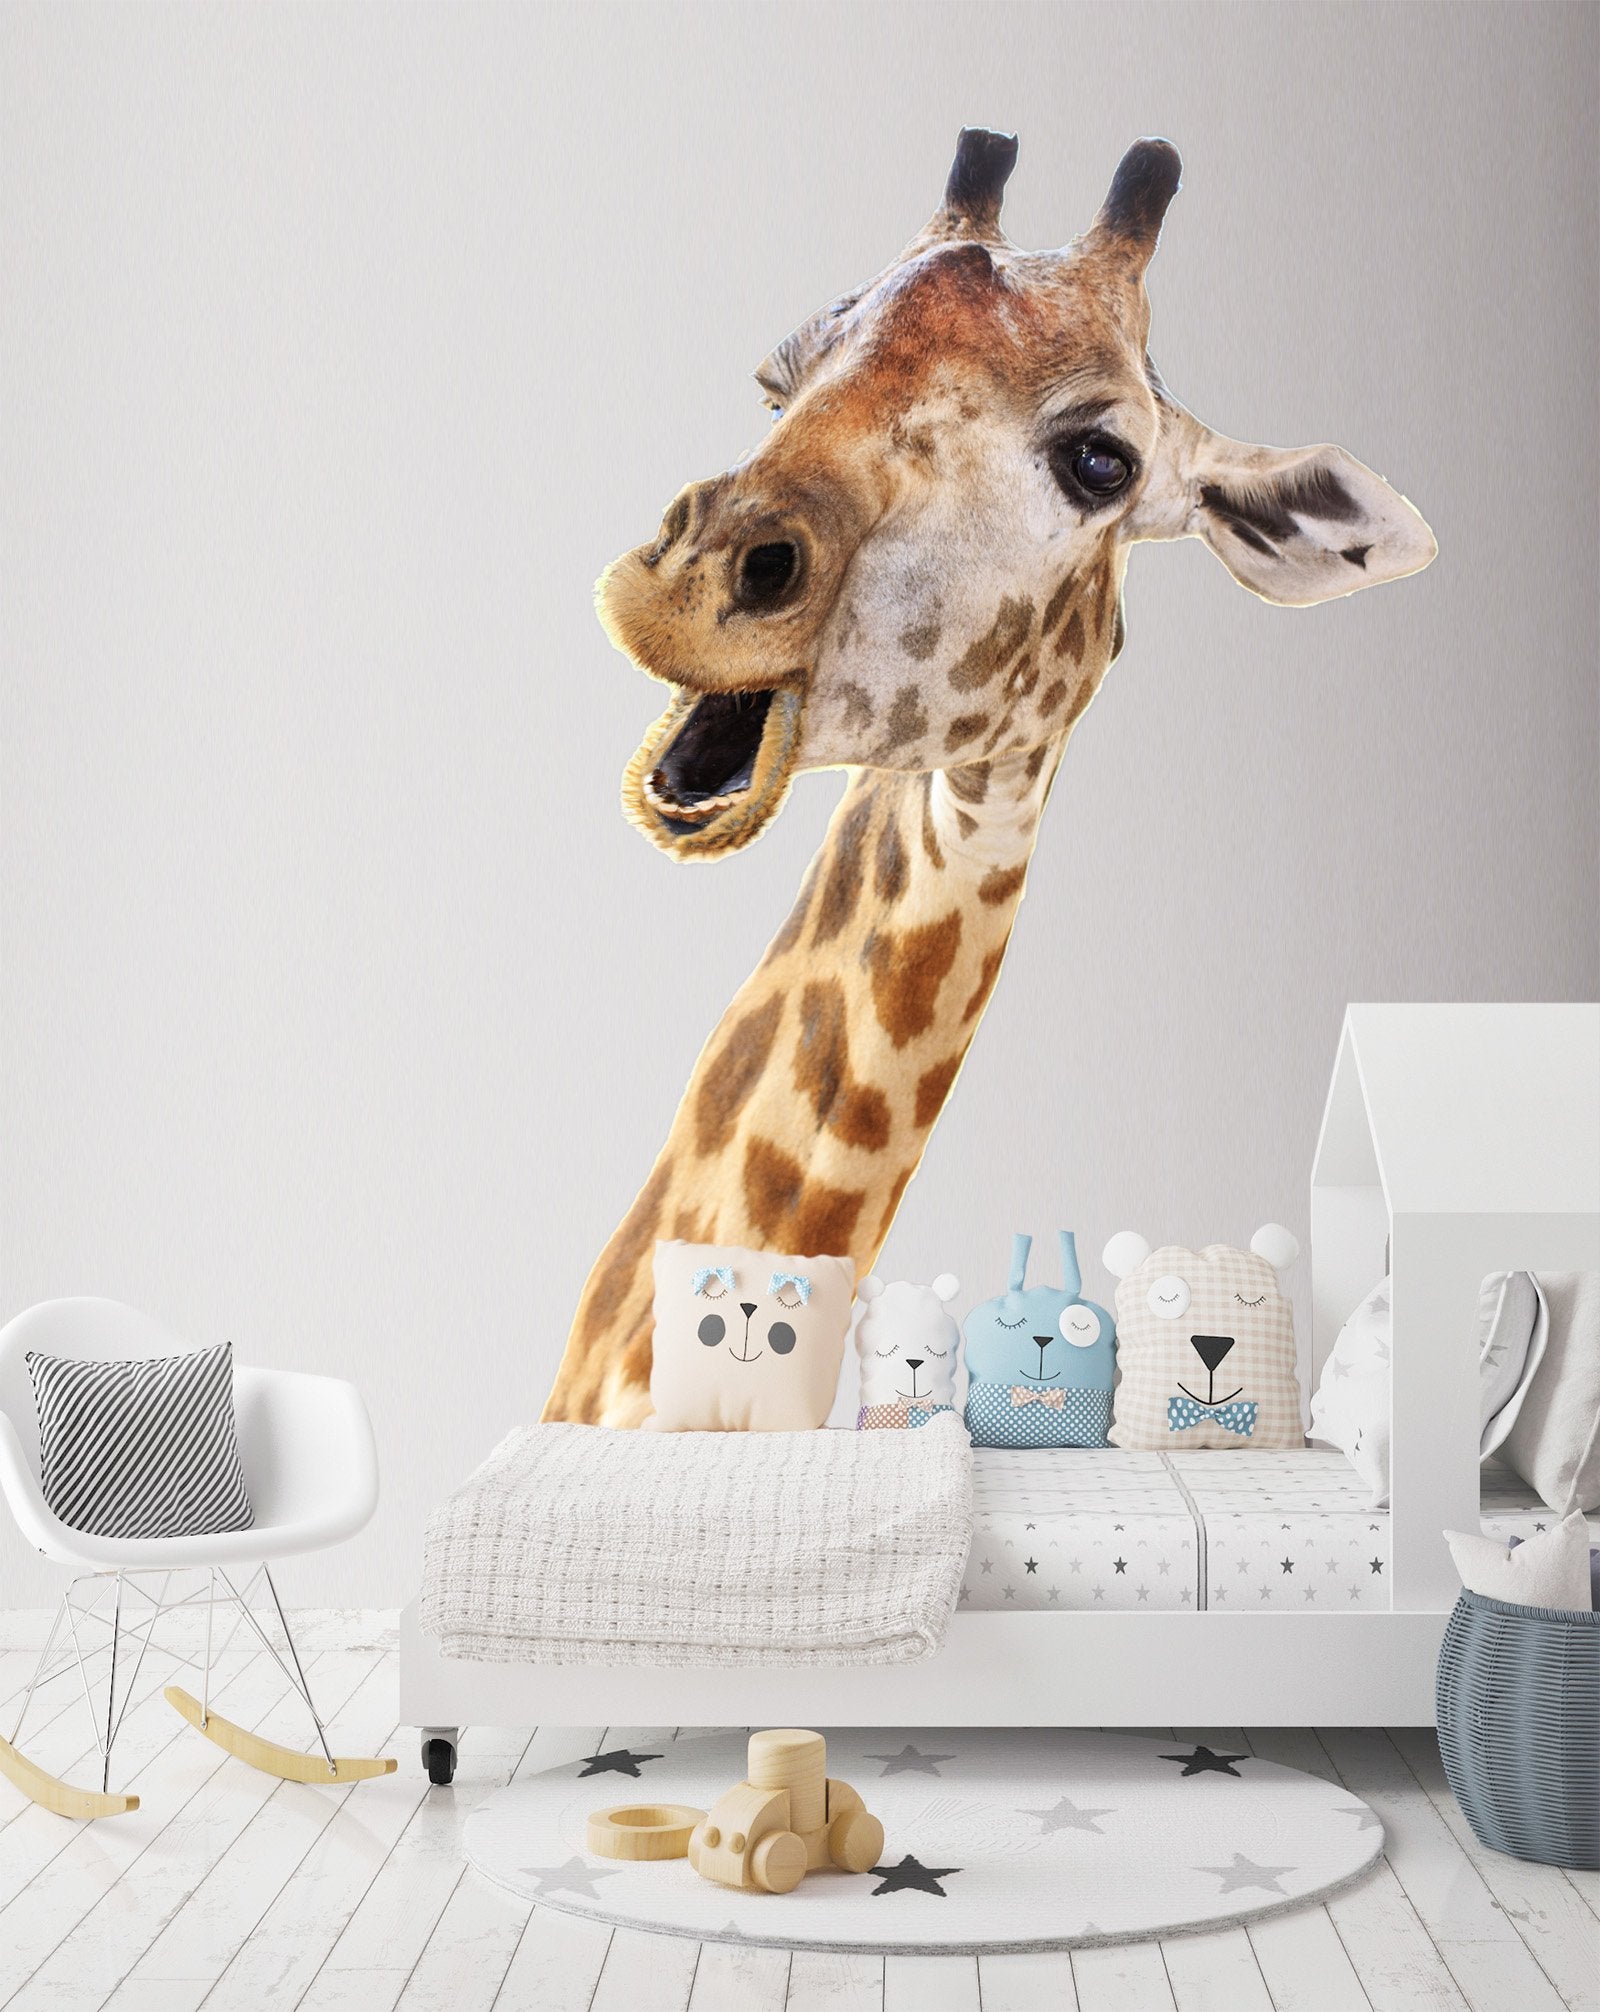 3D Giraffe Open Mouth 157 Animals Wall Stickers Wallpaper AJ Wallpaper 